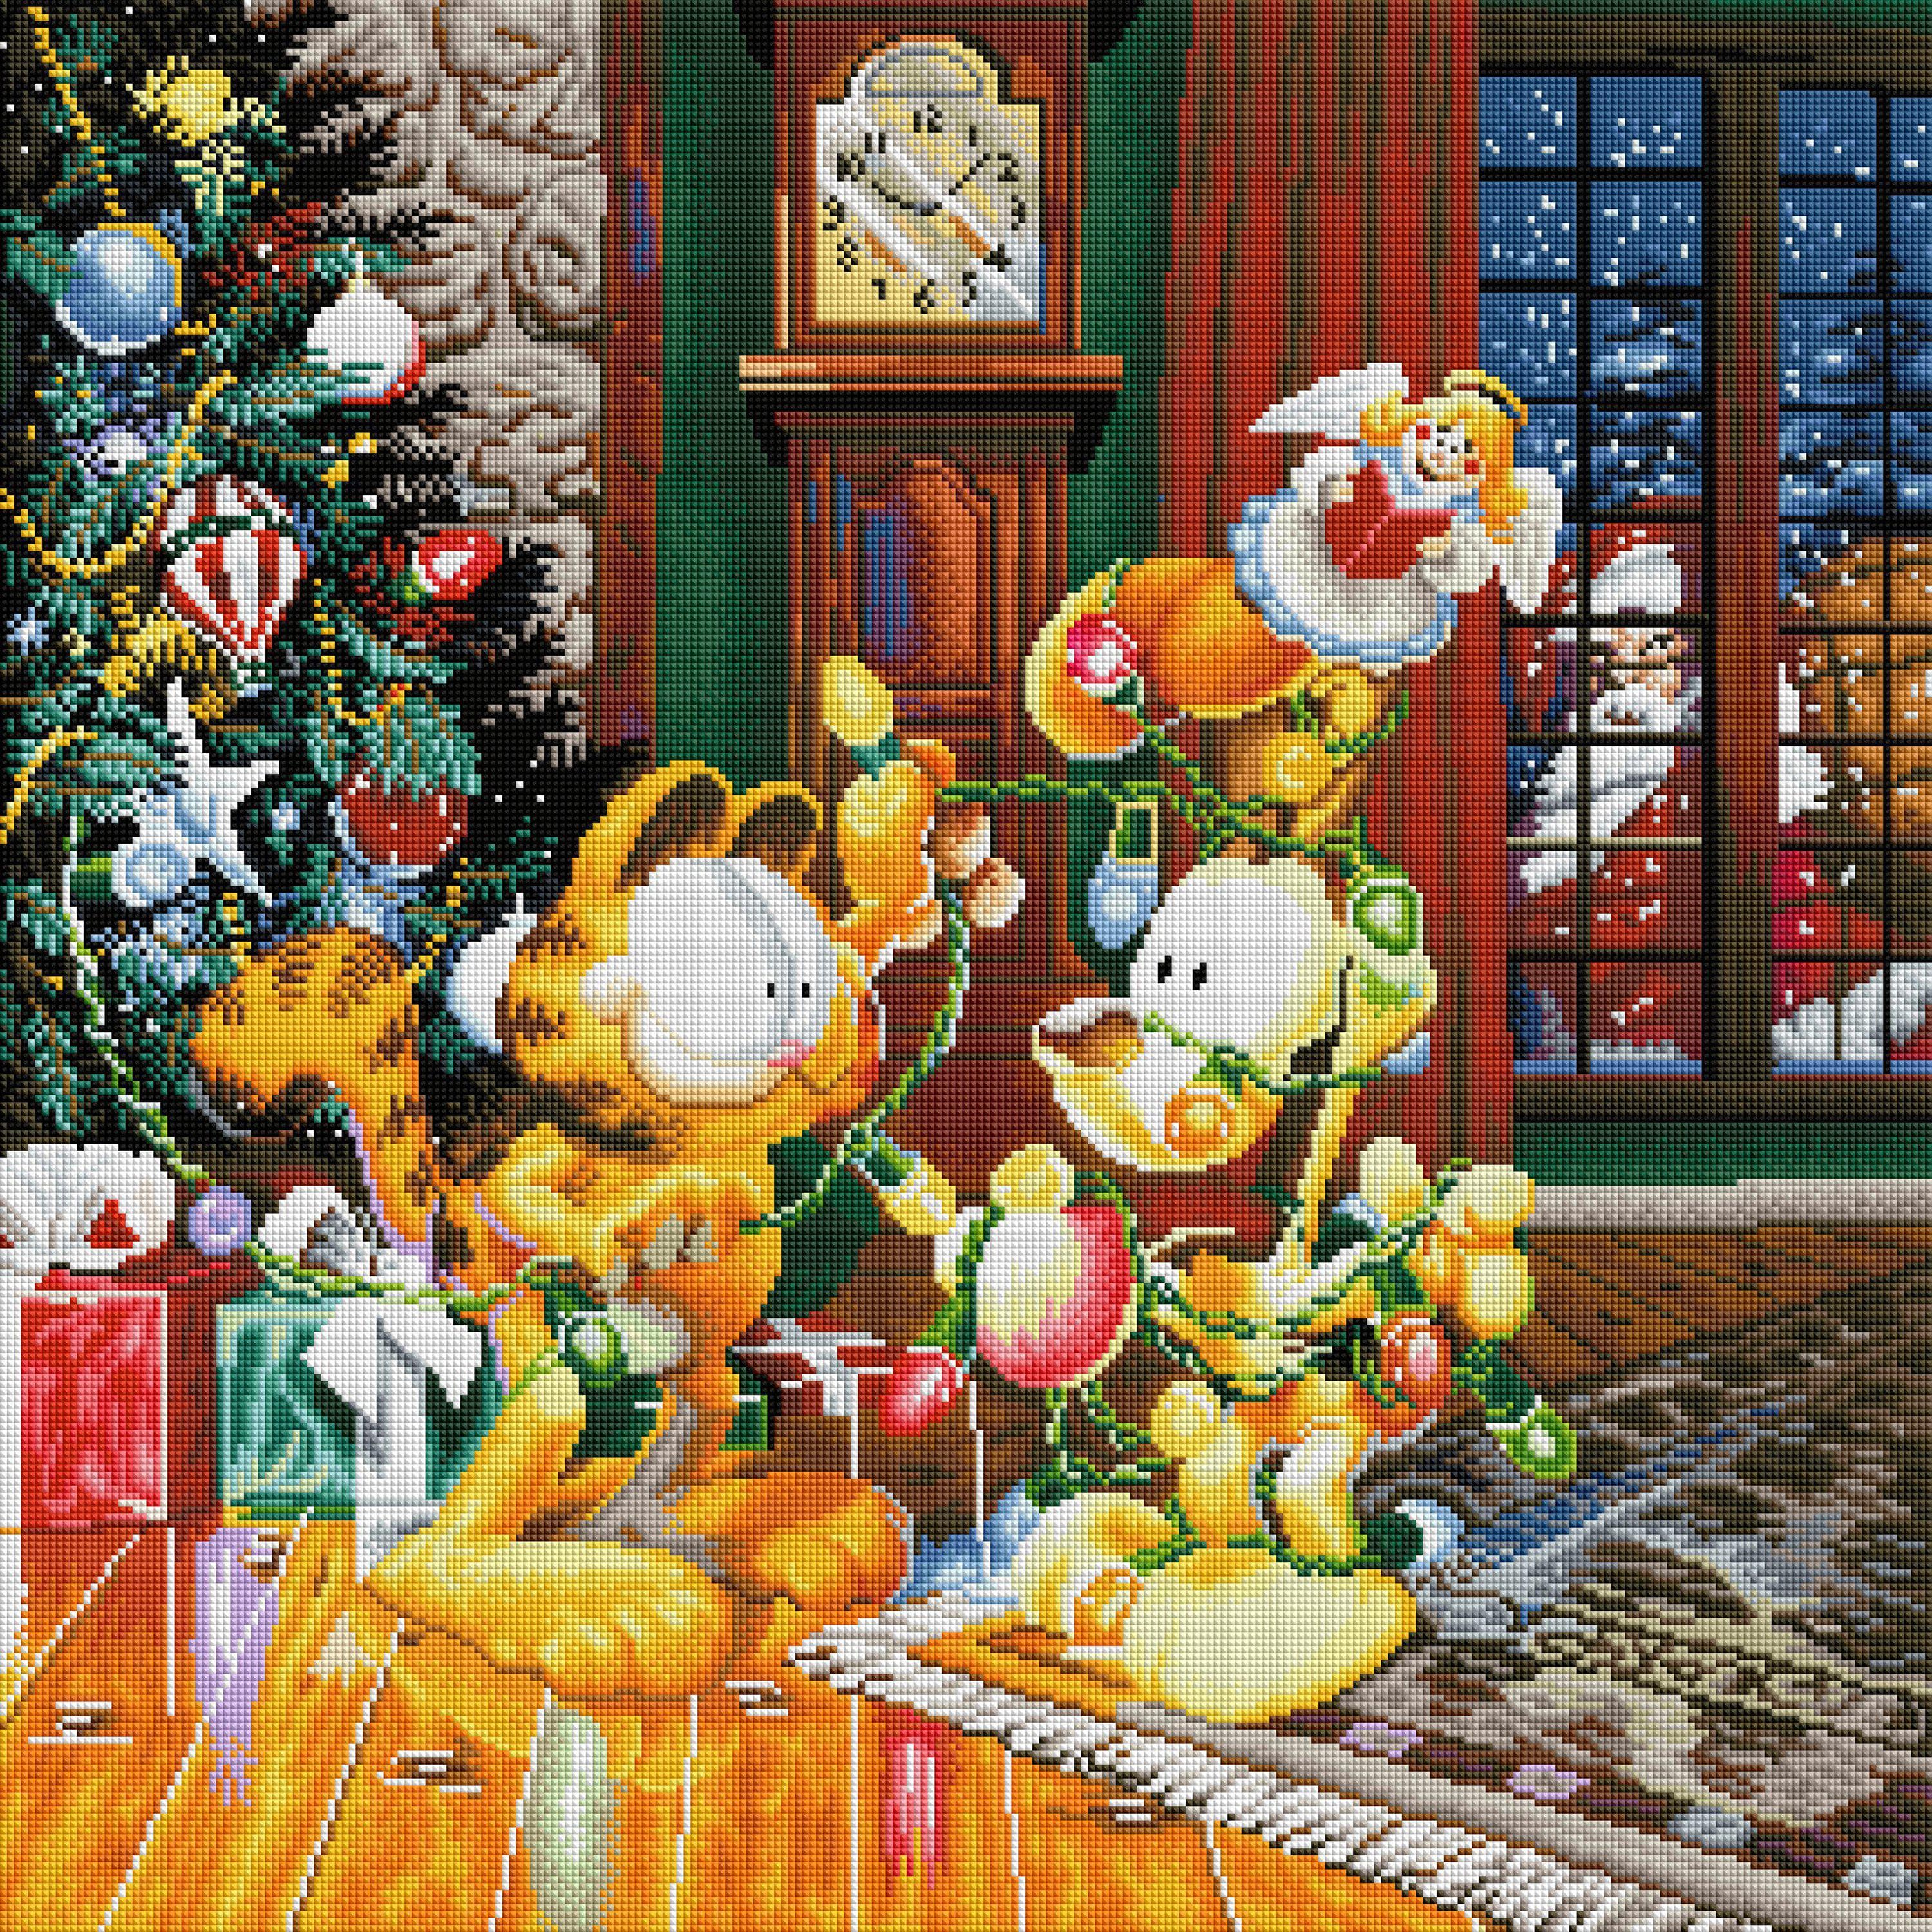 A Garfield Christmas Diamond Painting